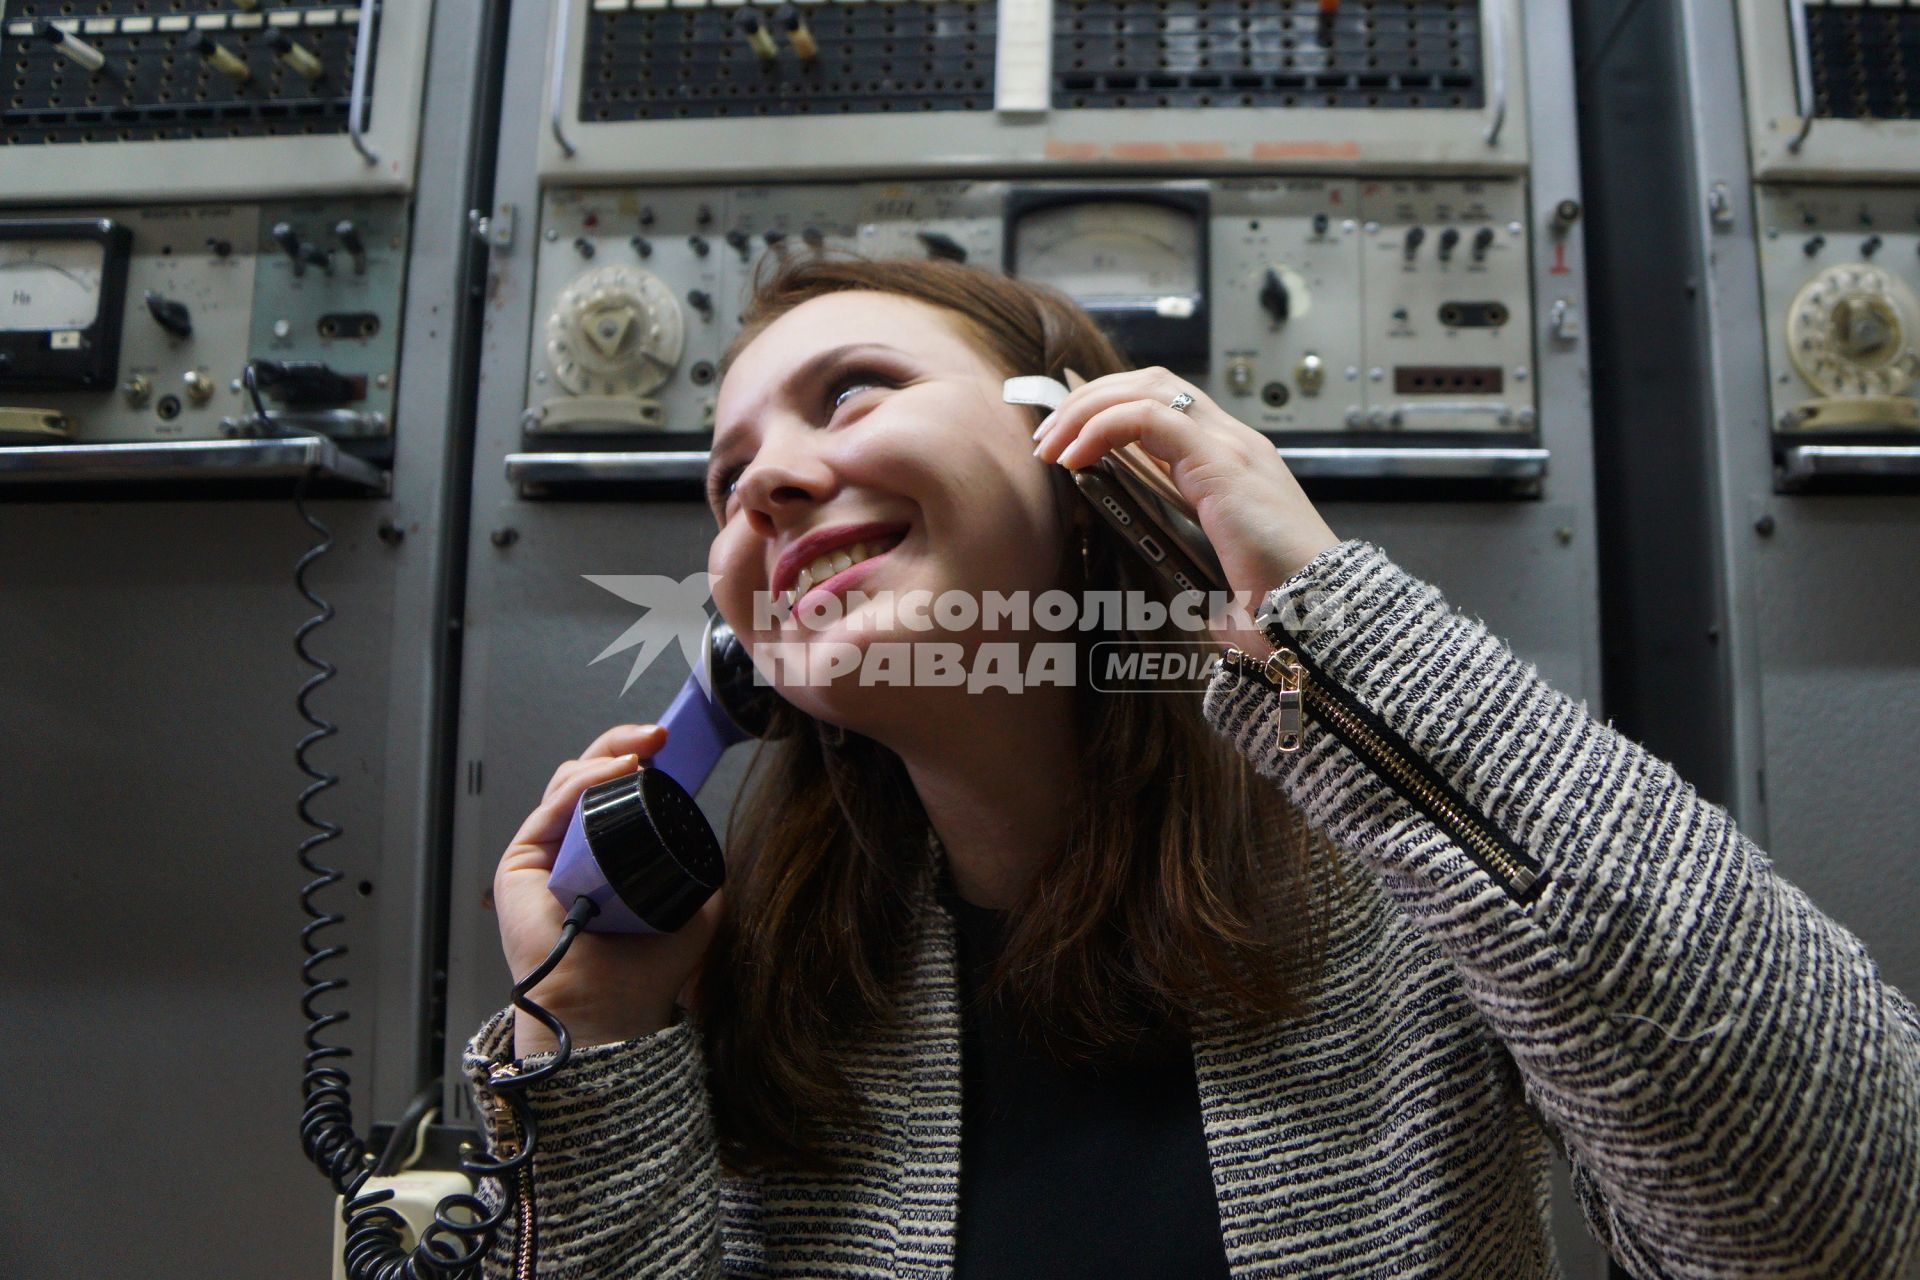 Екатеринбург. Девушка с мобильным телефоном и телефонной трубкой аналоговой телефонной станции \'Ростелеком\'